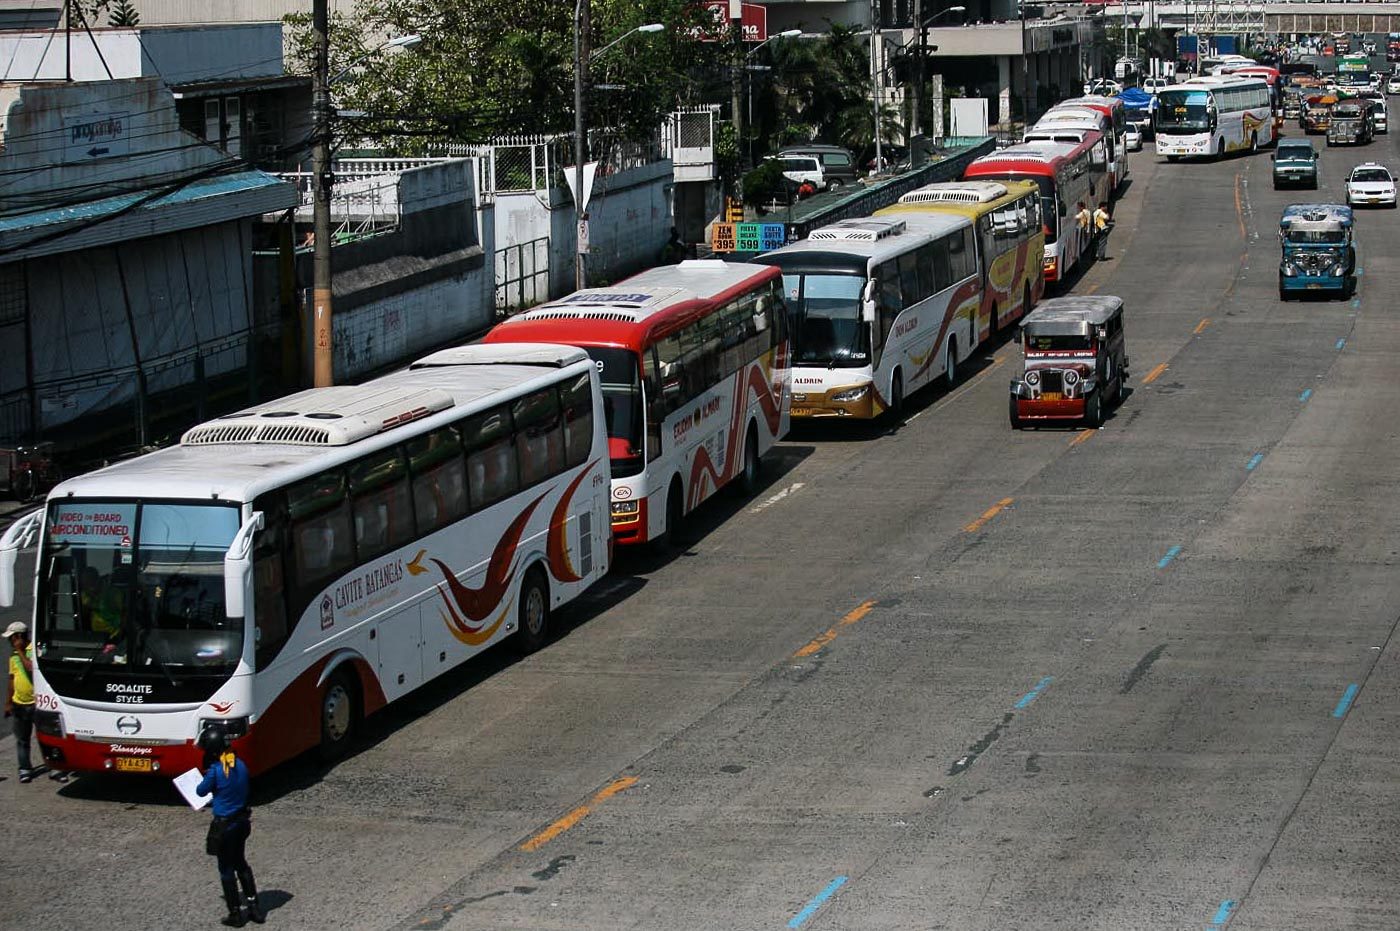 AKO Bicol asks Supreme Court to stop EDSA provincial bus ban